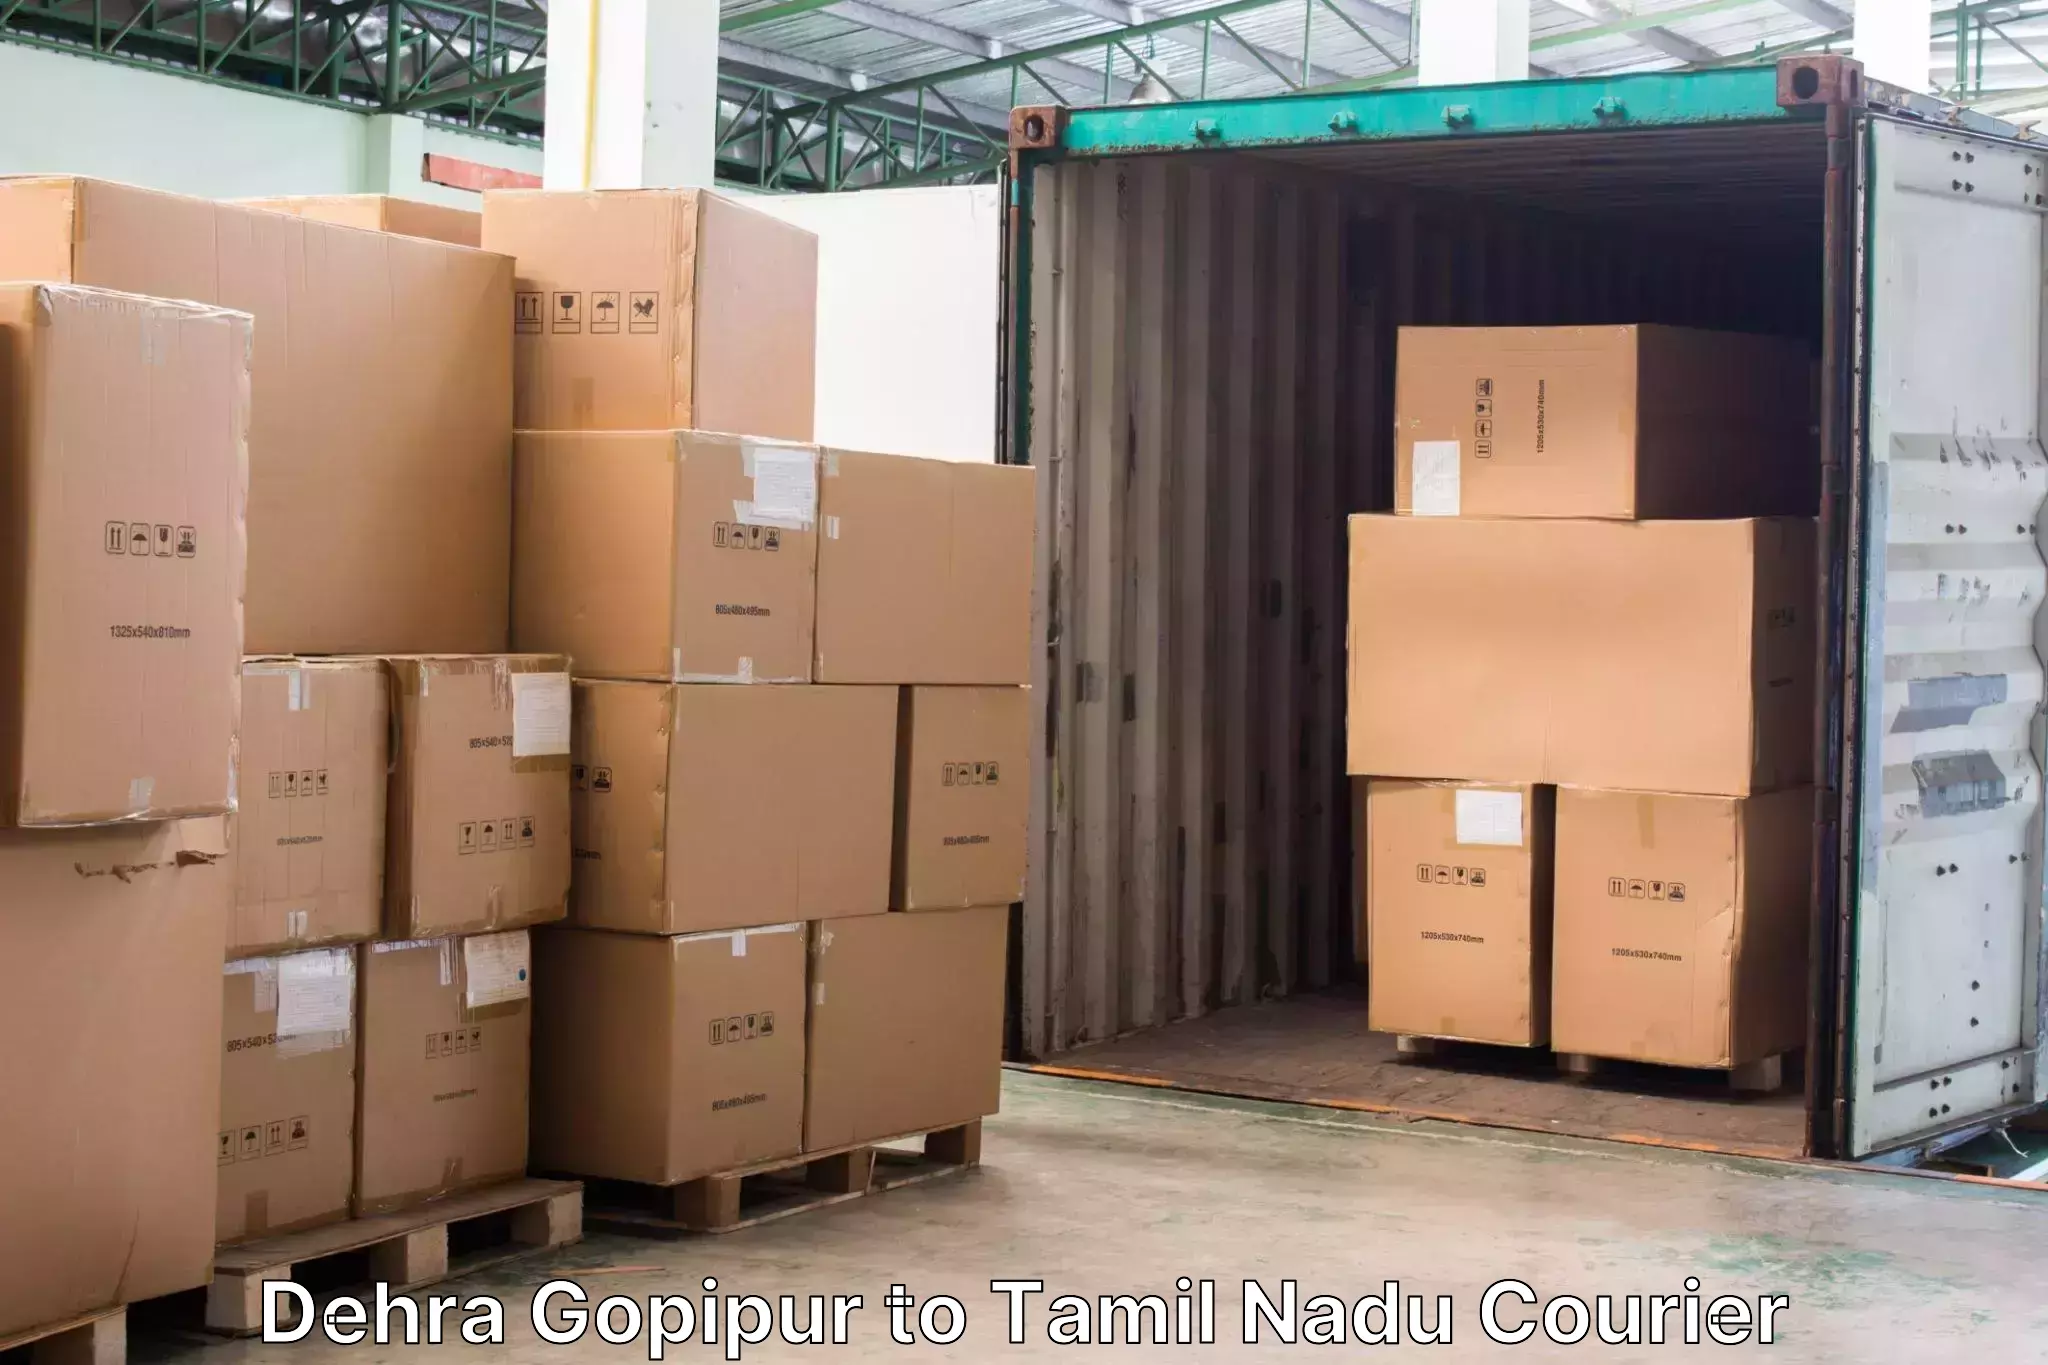 Door-to-door baggage service Dehra Gopipur to Tamil Nadu